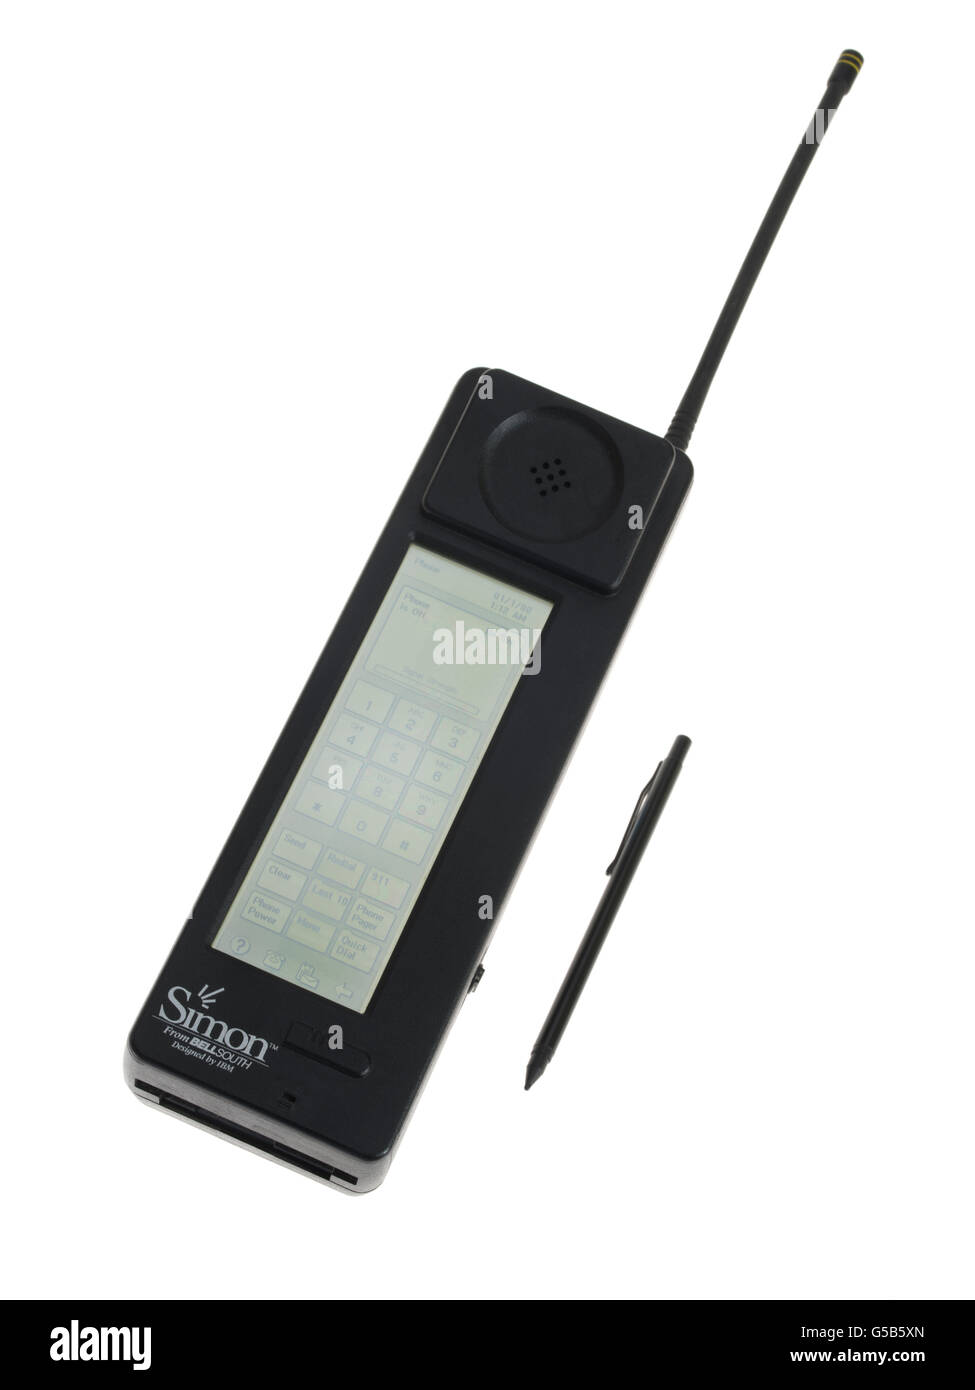 Simon IBM Personal Communicator 1ère smart phone, conçu par IBM pour Bell South publié le 16 août 1994. Écran tactile & PDA Banque D'Images